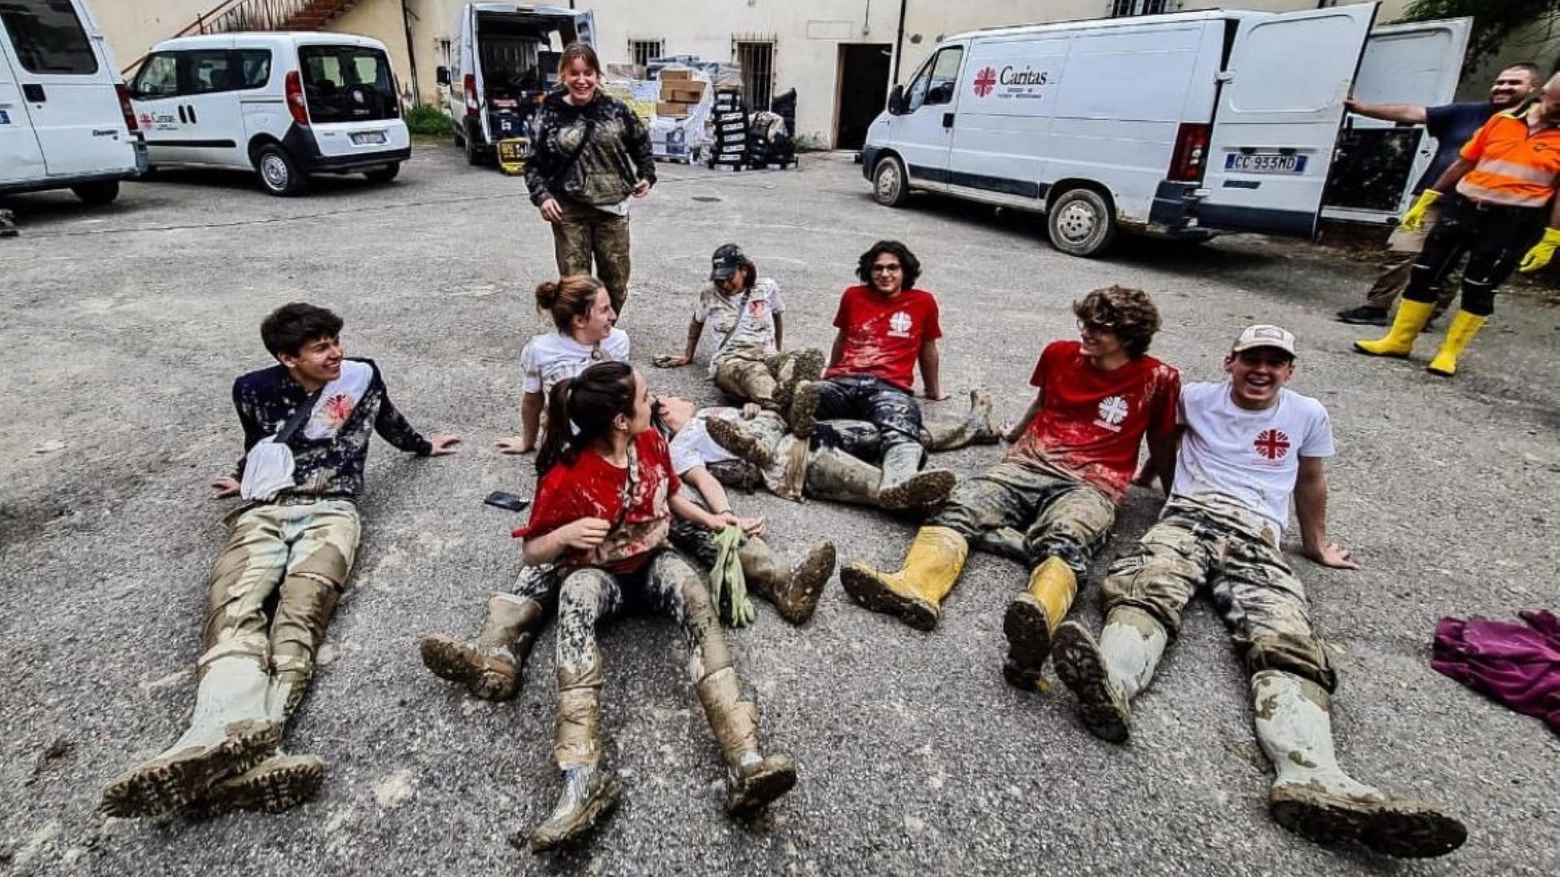 Subito dopo le prime ore di alluvione in Emilia Romagna, sono stati numerosi i ragazzi che hanno aiutato. I premiati sono residenti nelle province di Forlì-Cesena e Ravenna e sono nati dopo il 2000